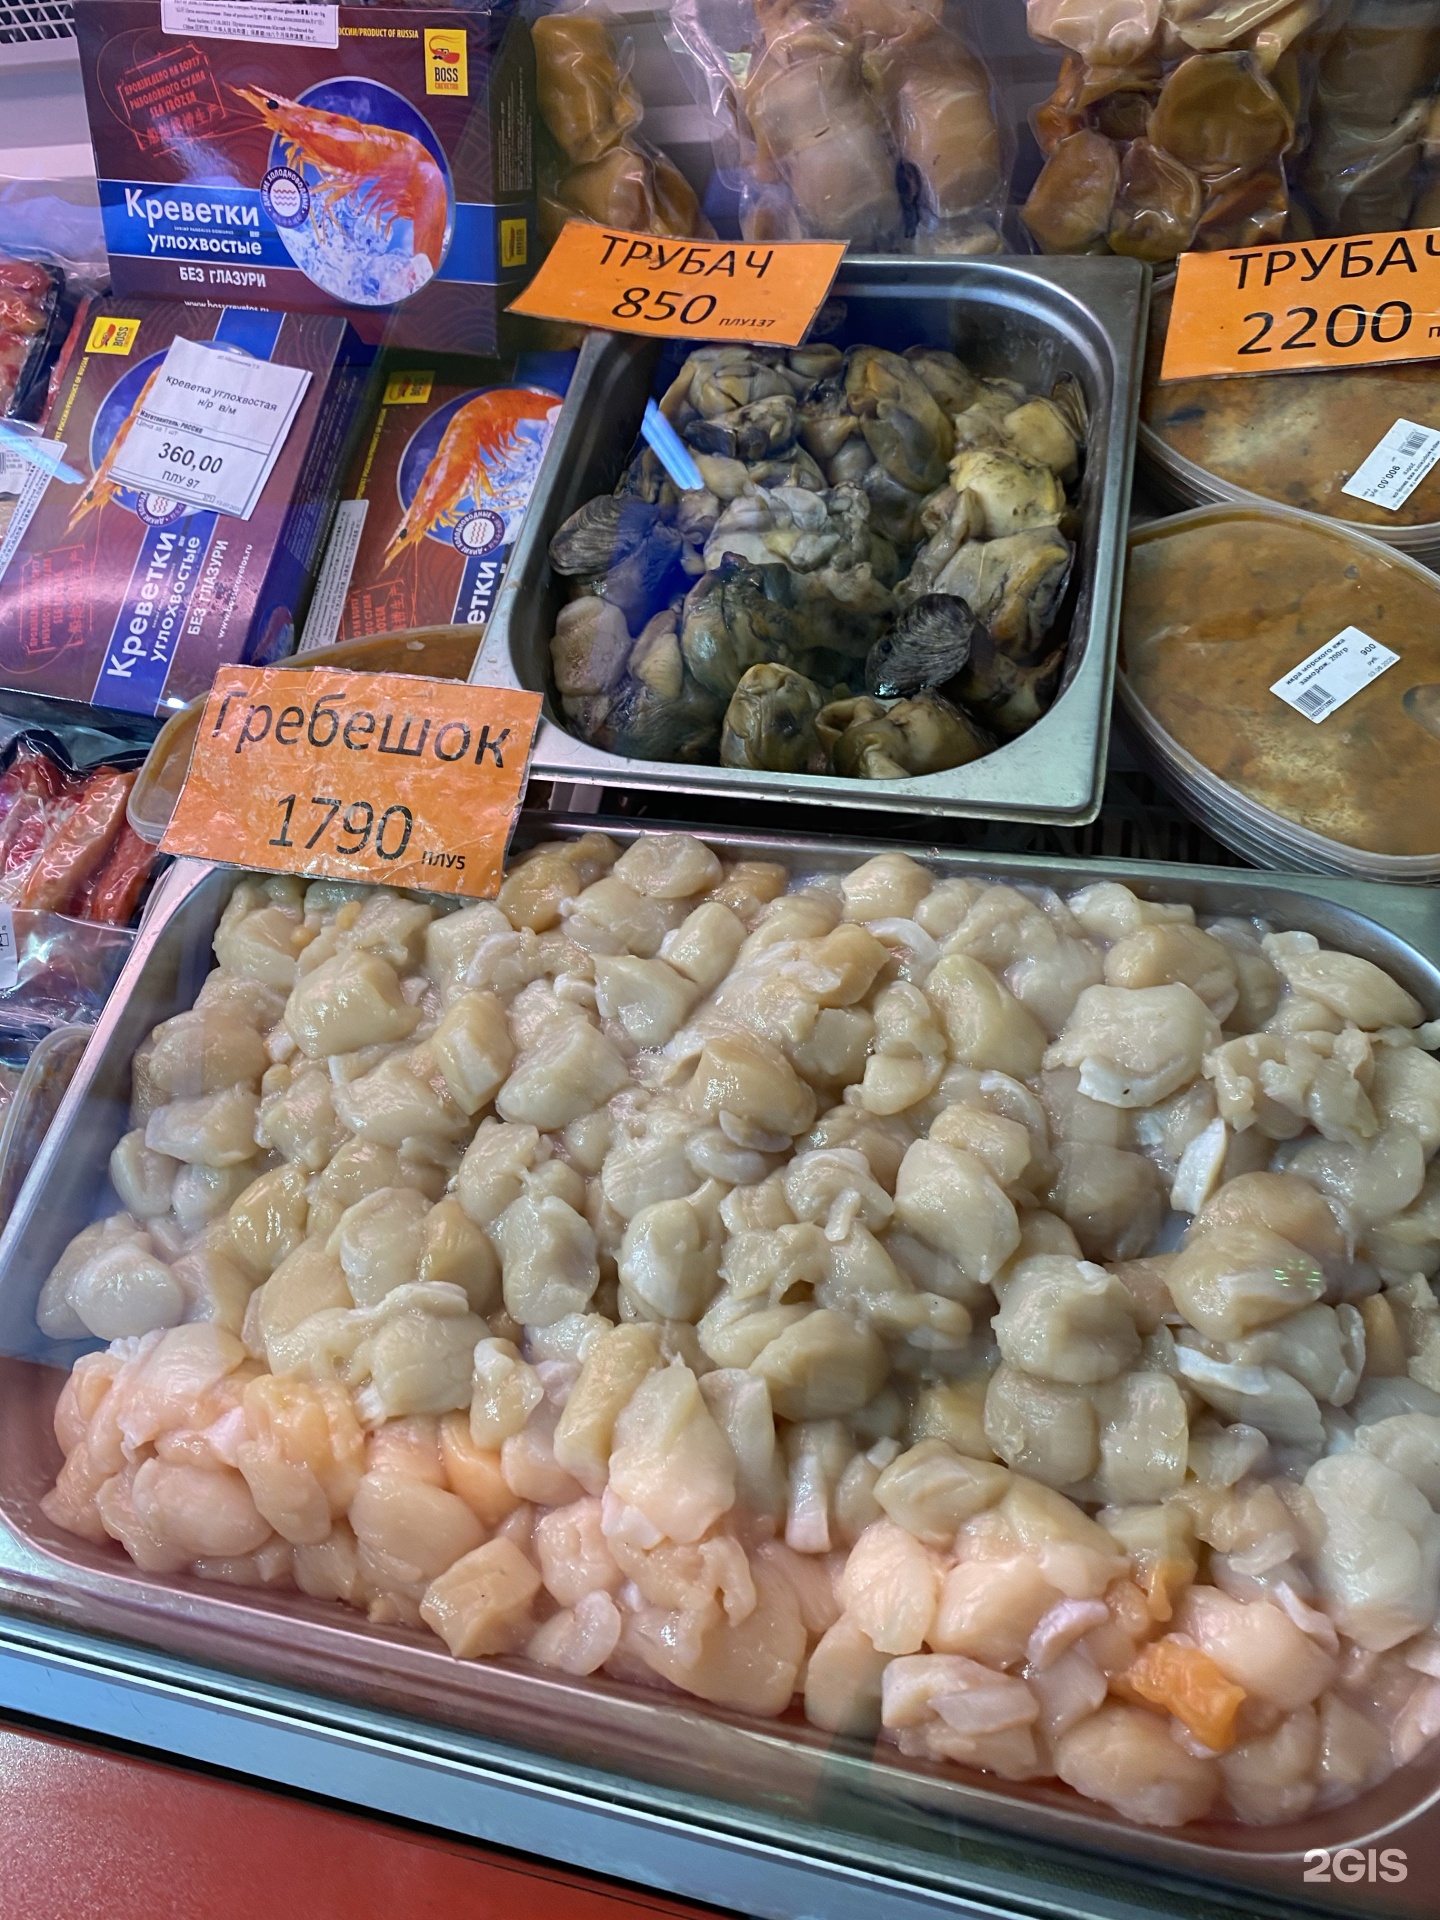 Купить рыбу во владивостоке. Владивосток рынок морепродуктов. Рыбный рынок Владивосток. Рыбный рынок на Фадеева Владивосток. Рыбный базар во Владивостоке.